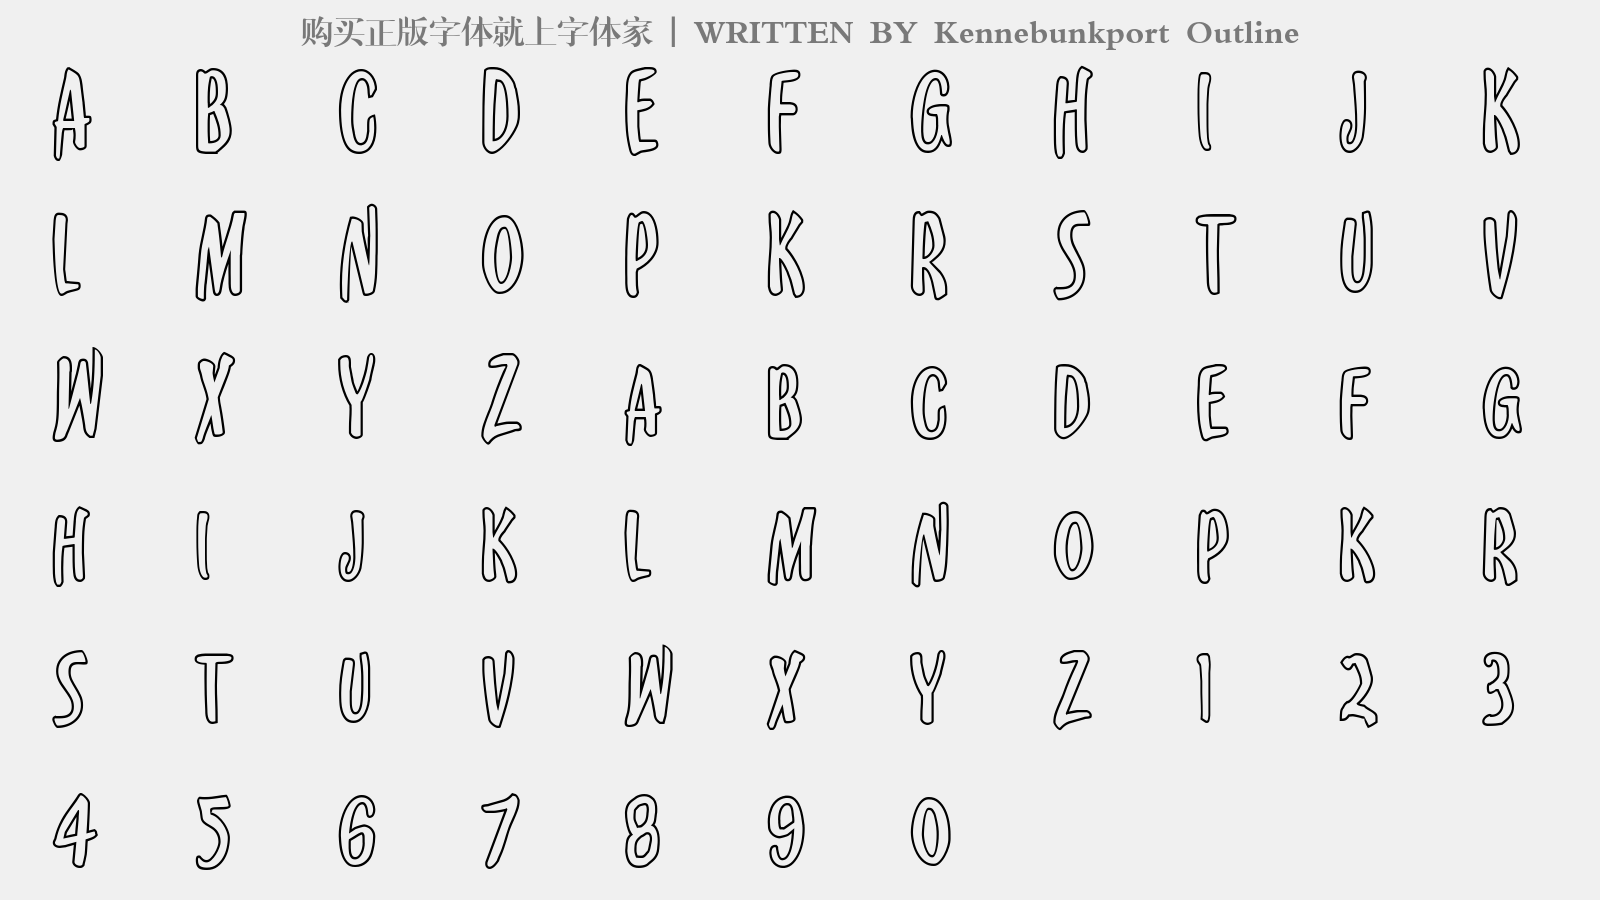 Kennebunkport Outline - 大写字母/小写字母/数字